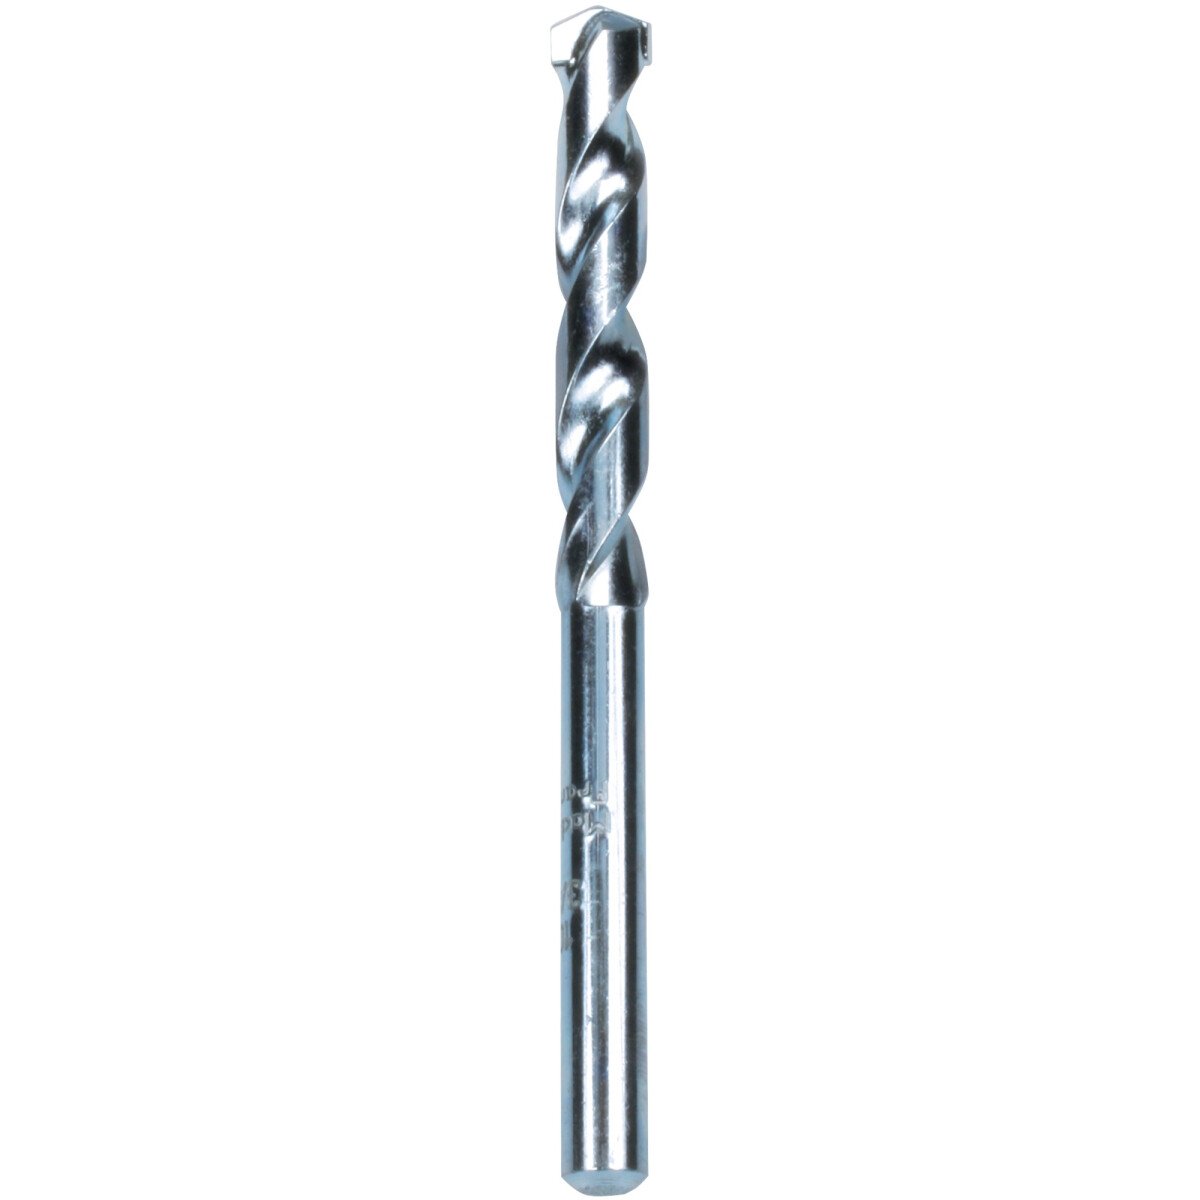 Makita P-19679 Masonry Drill Bit, standard length, 1 per pack Diameter: 3.5mm, Bit Length 75mm